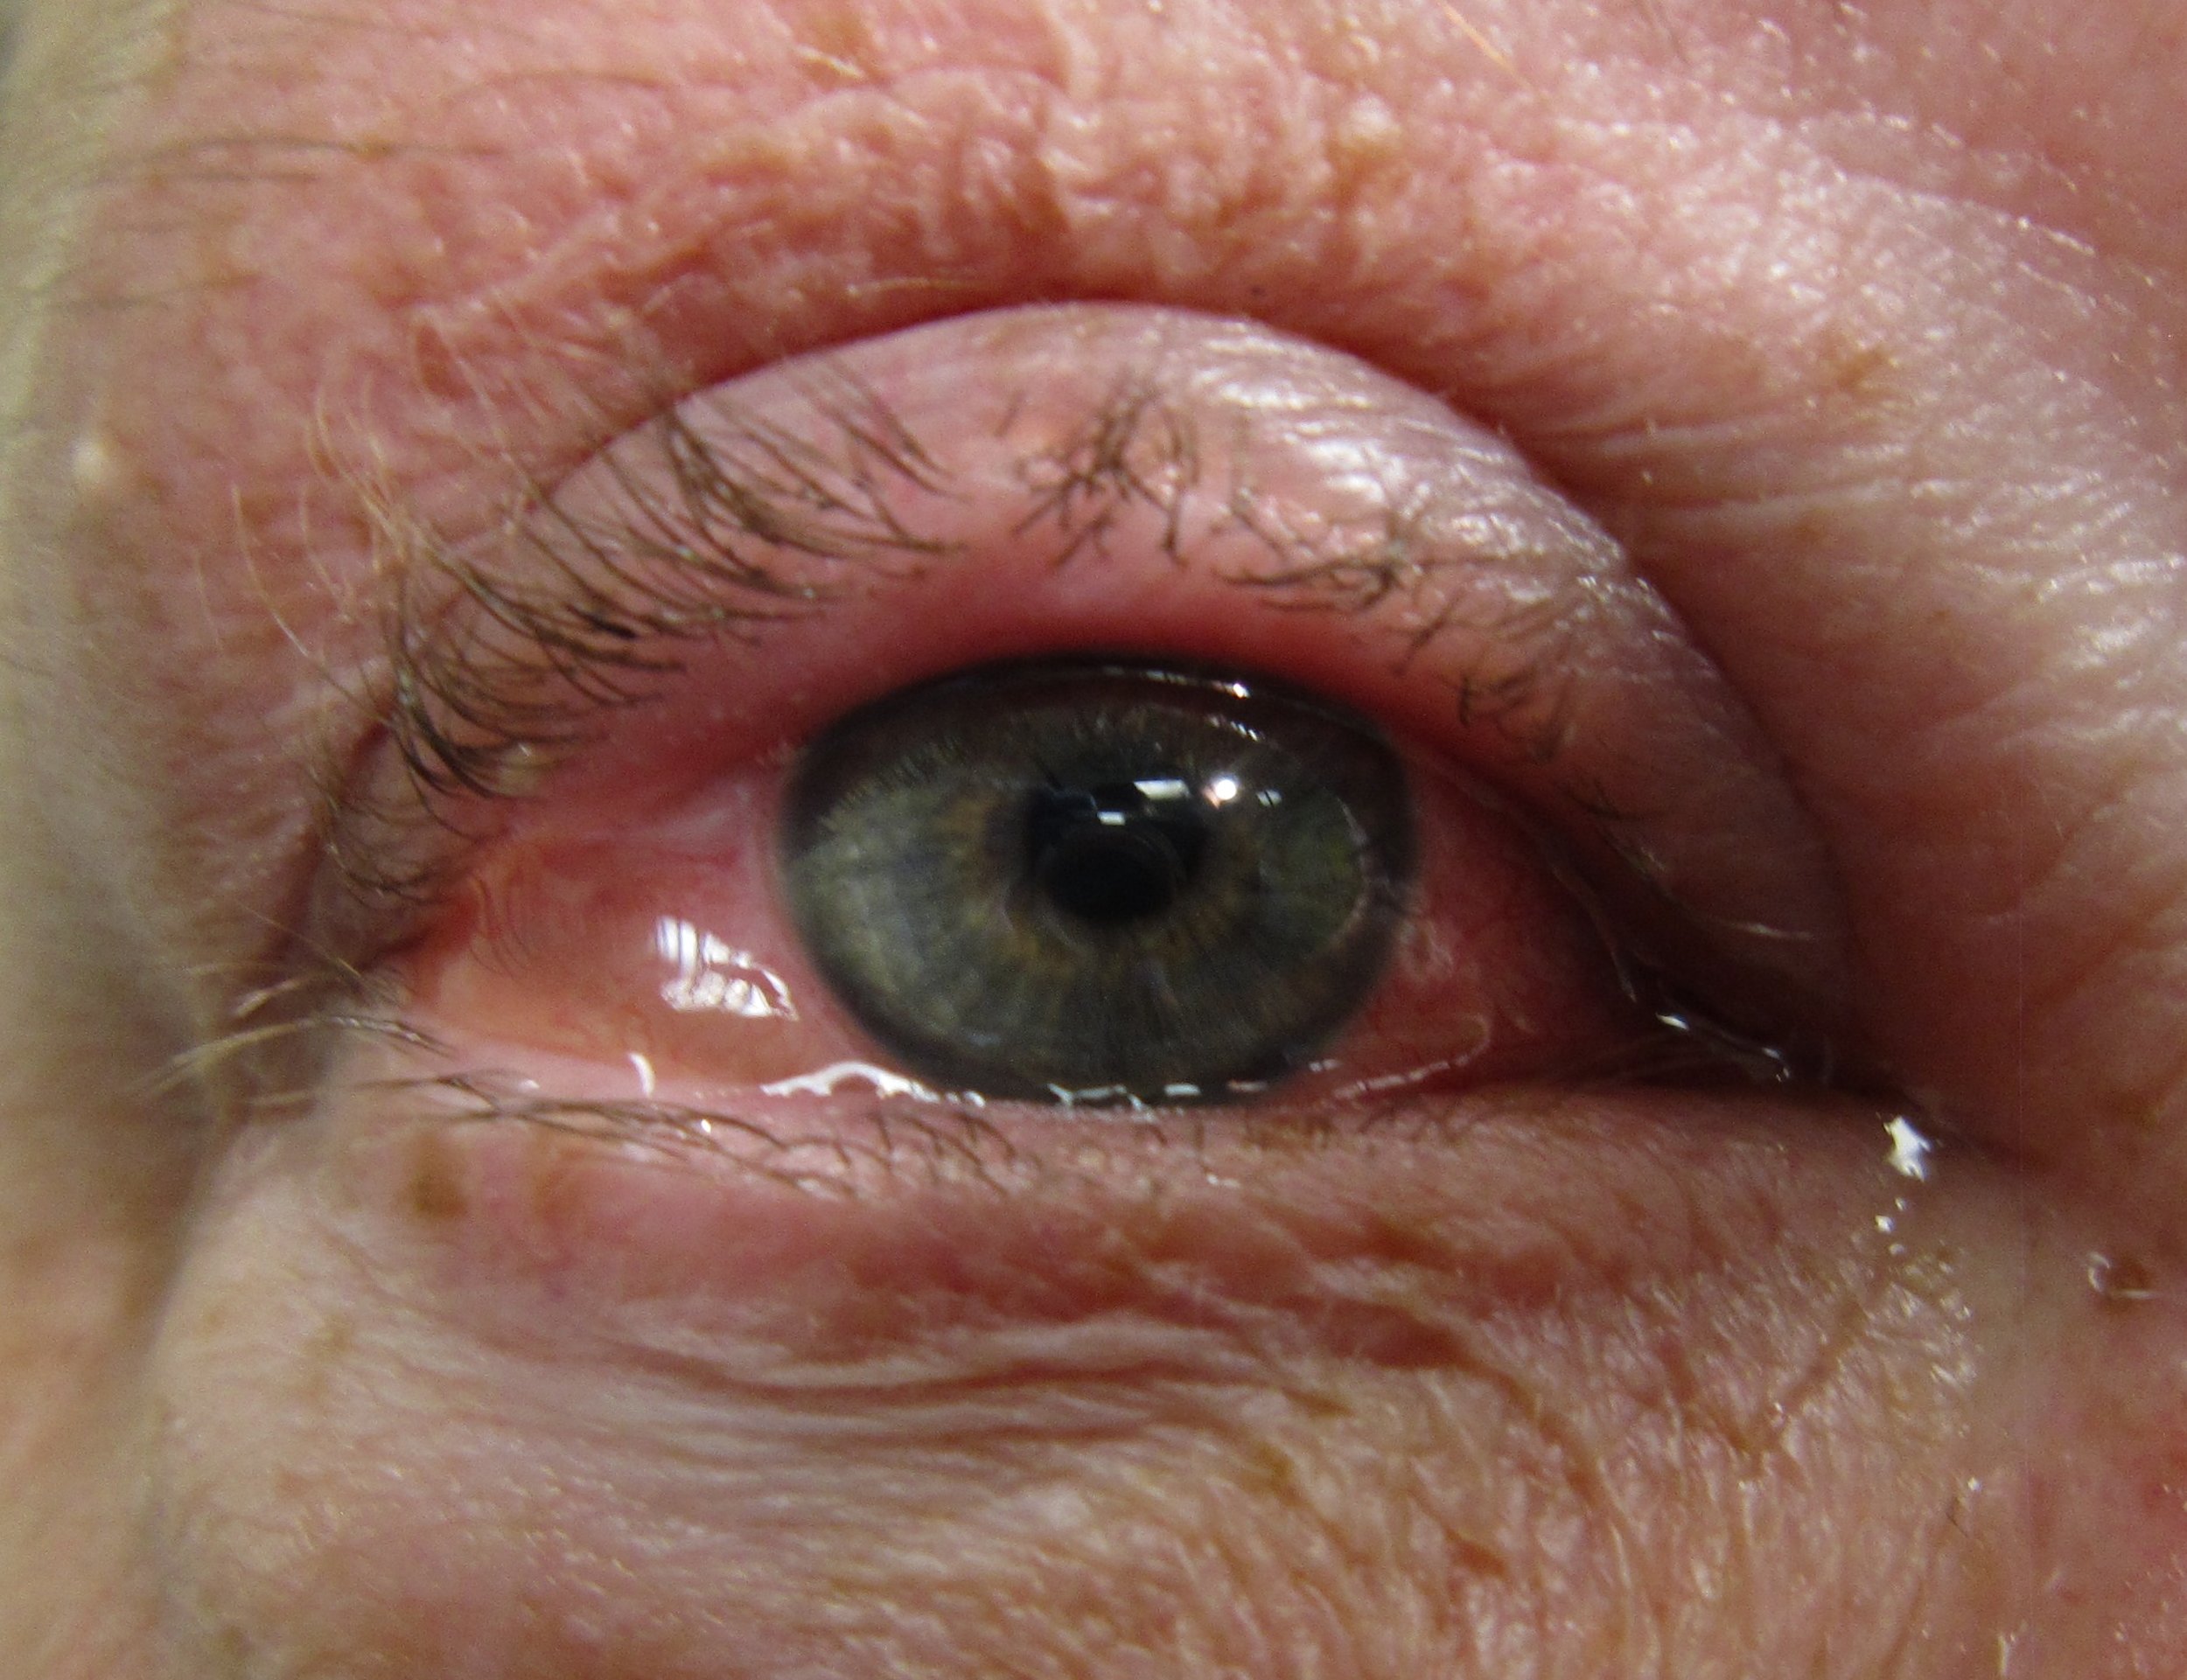 gonorrhea eye treatment